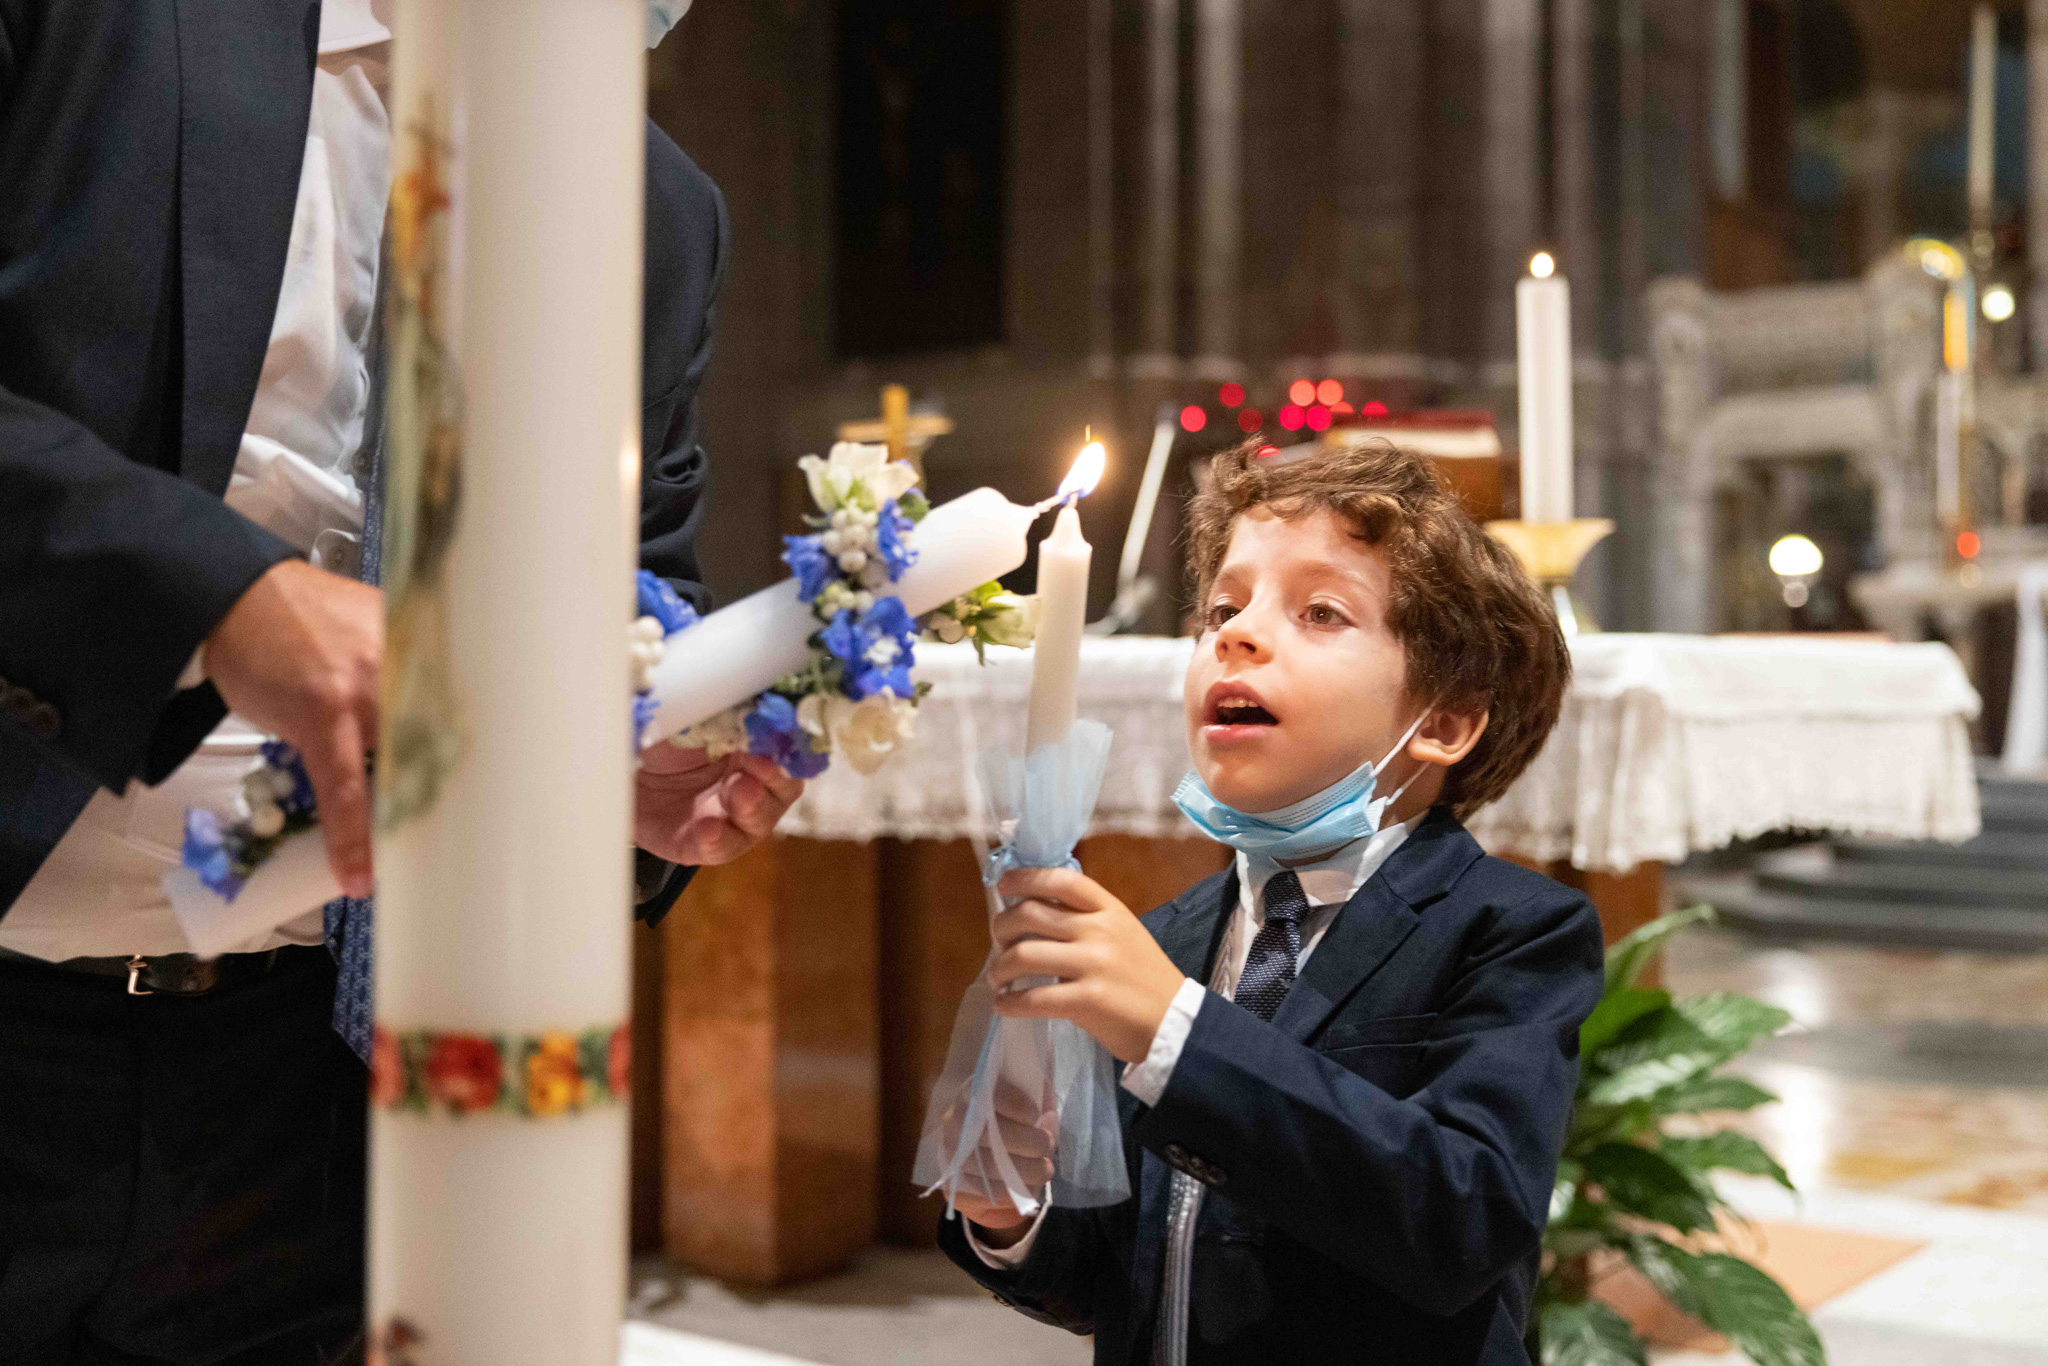 Il fratello del bambino che accende la candela in Basilica Parrocchiale Corpus Domini a Milano